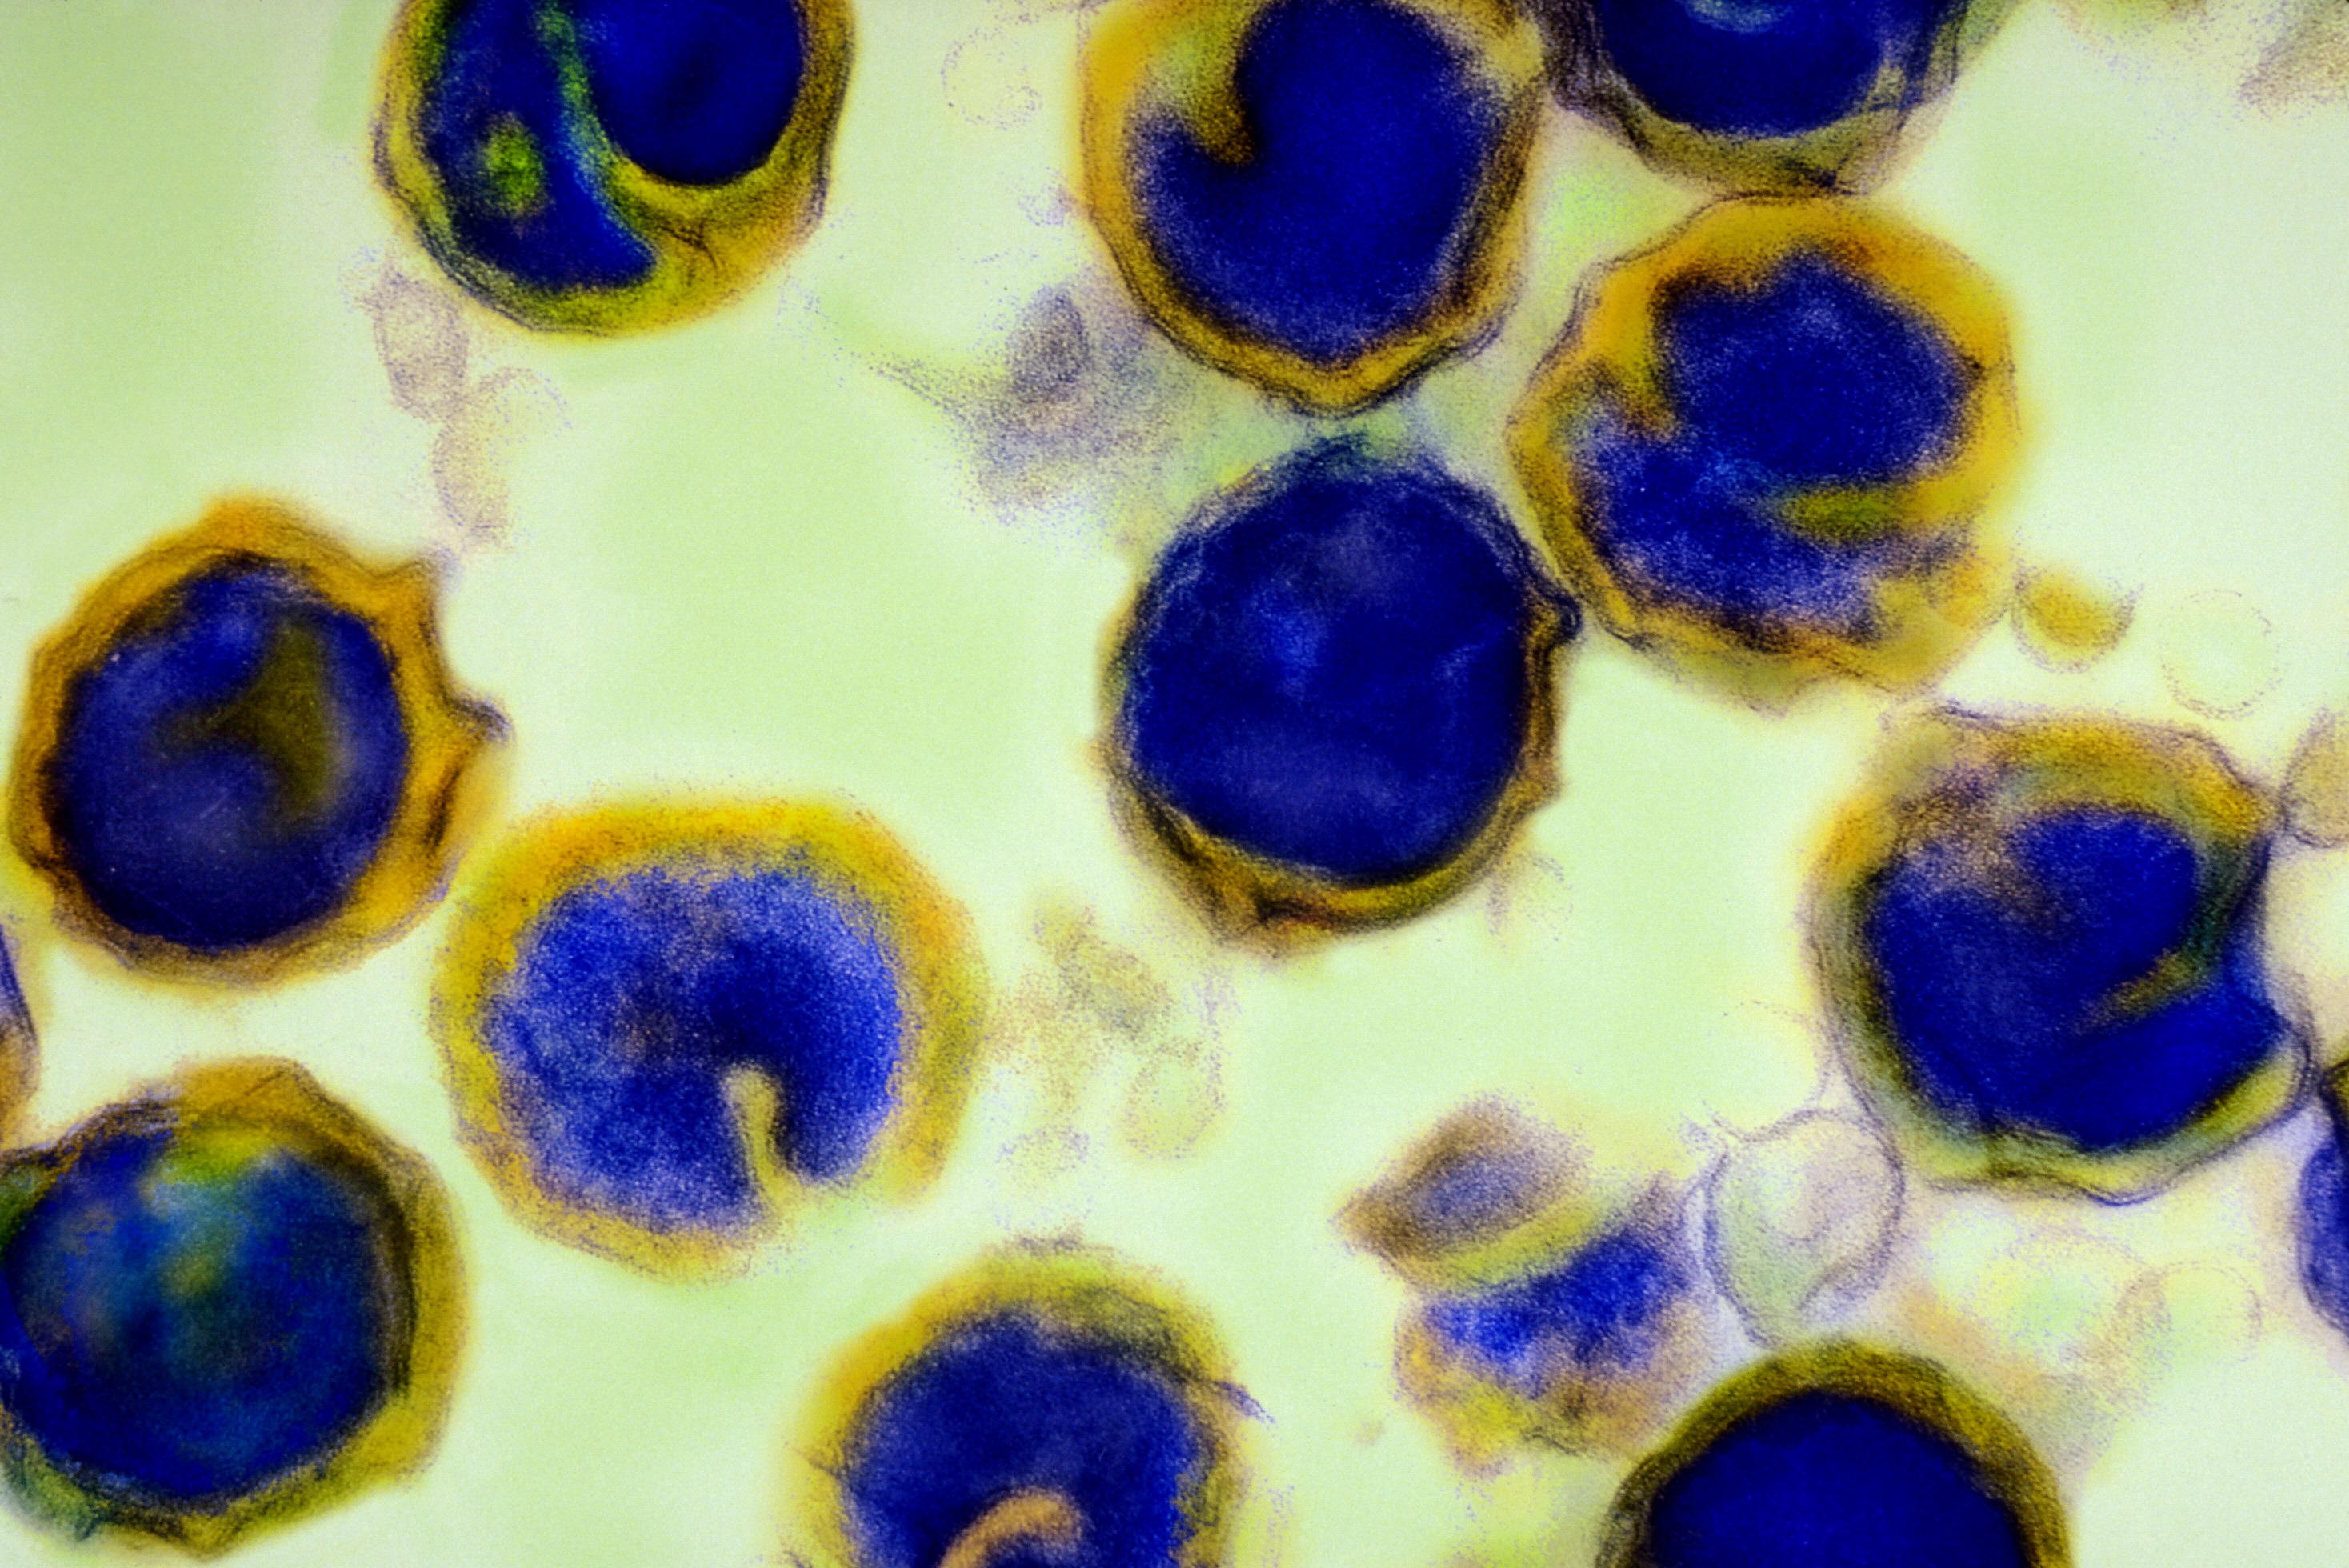 Хламидия trachomatis. Бактерия хламидия трахоматис. Респираторный хламидиоз под микроскопом.